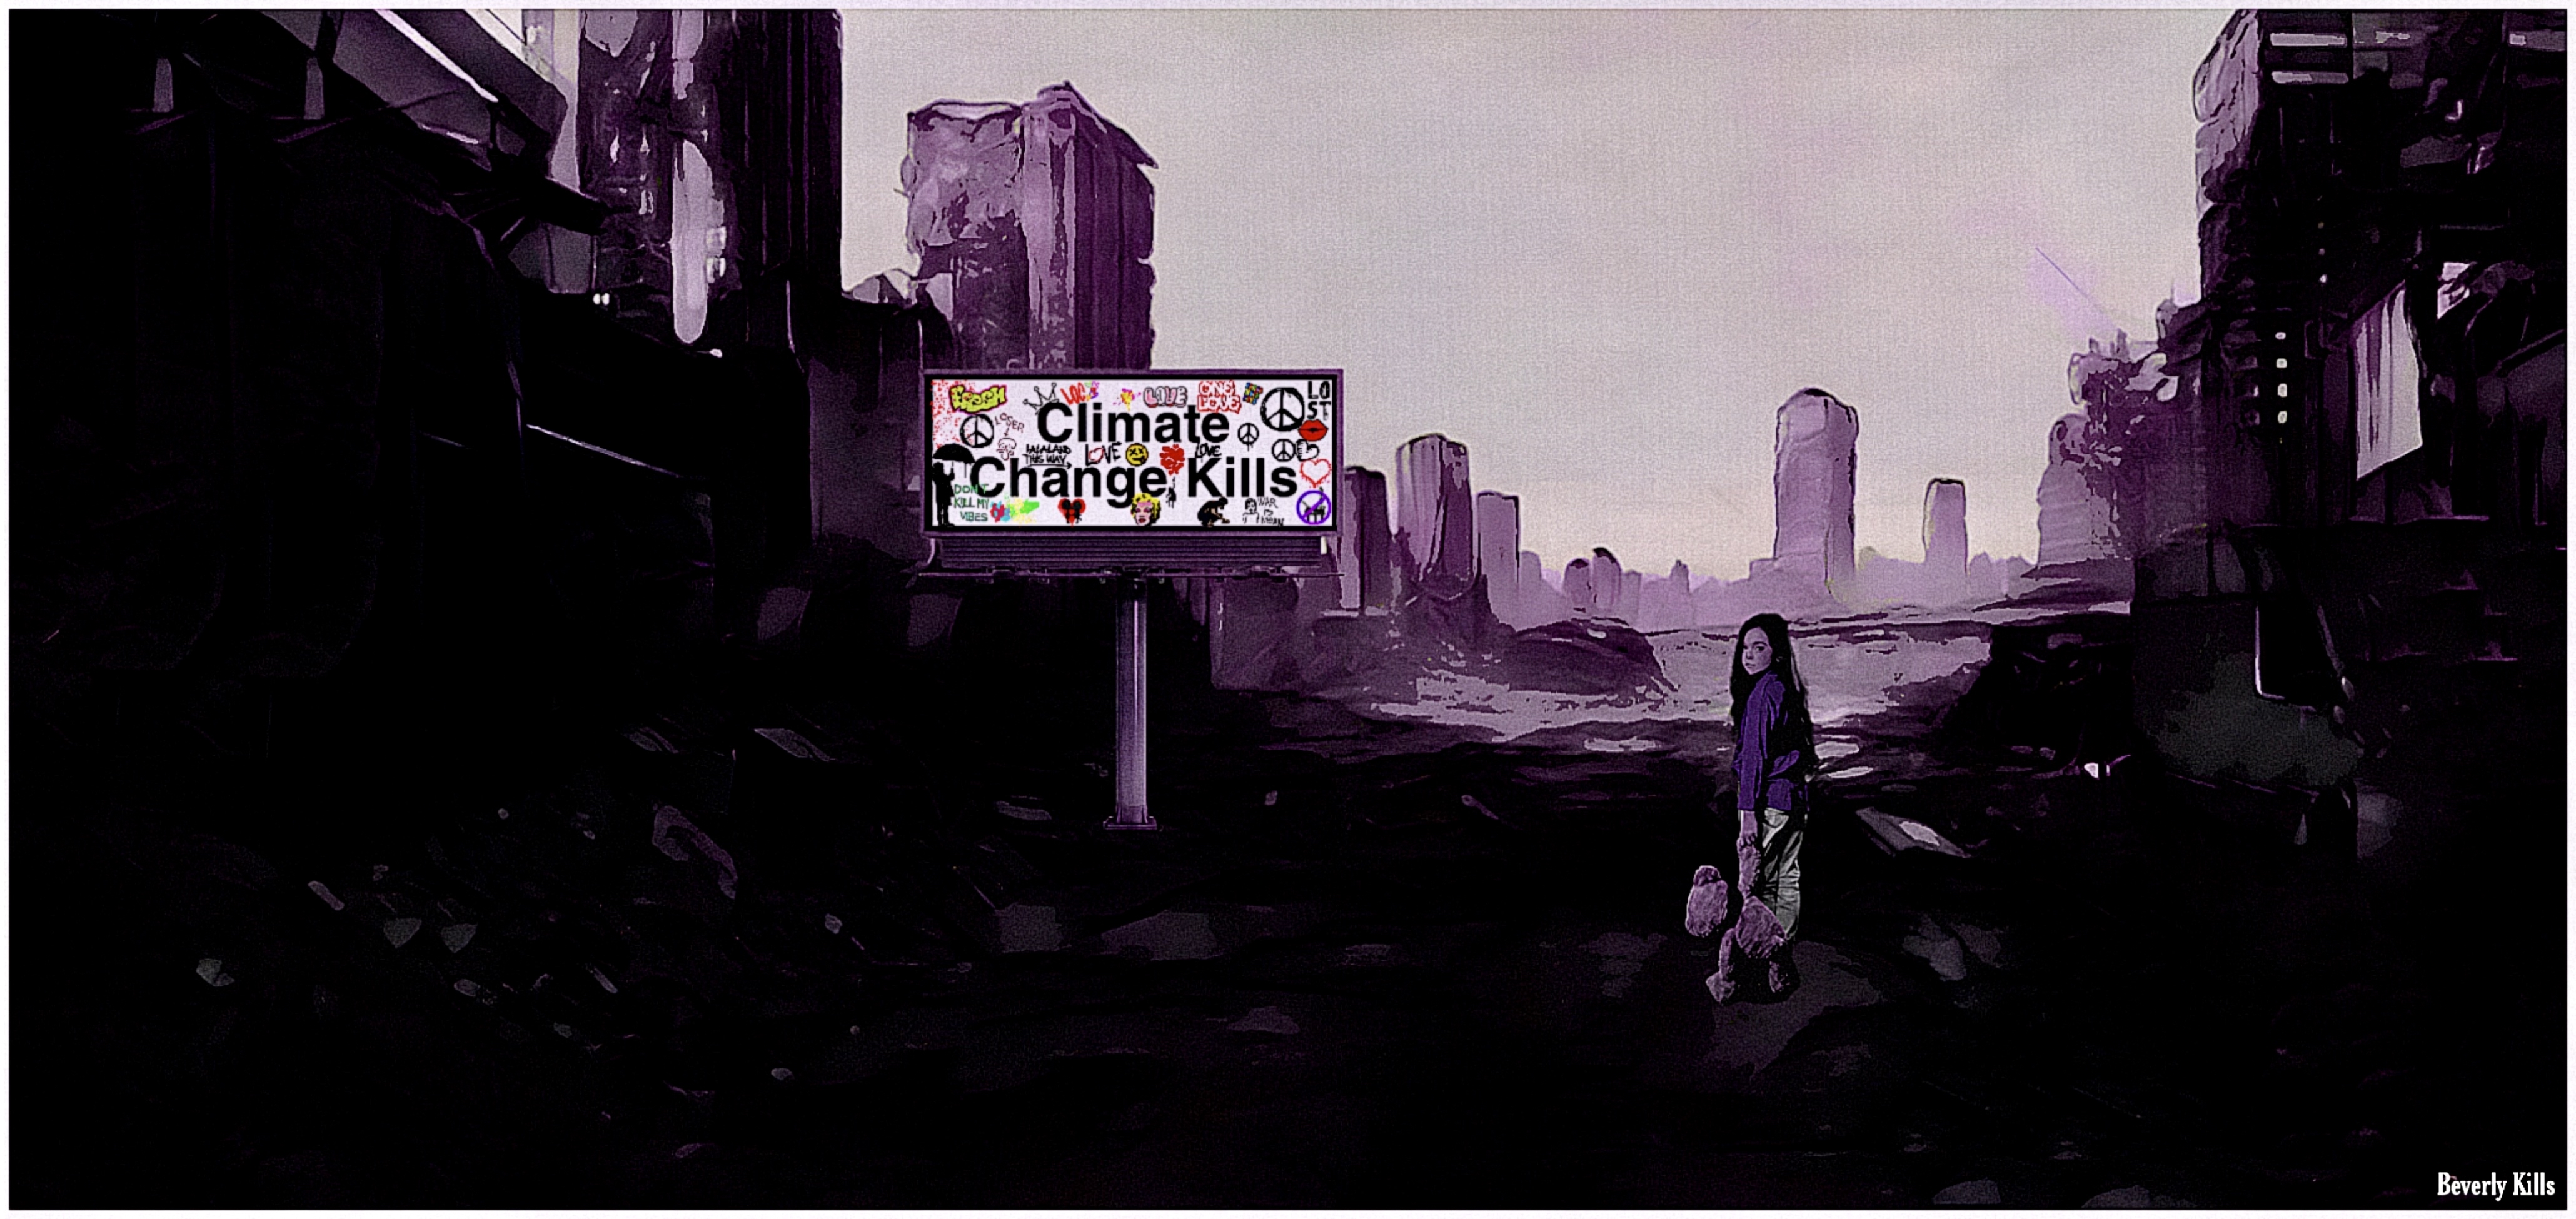 Climate change kills